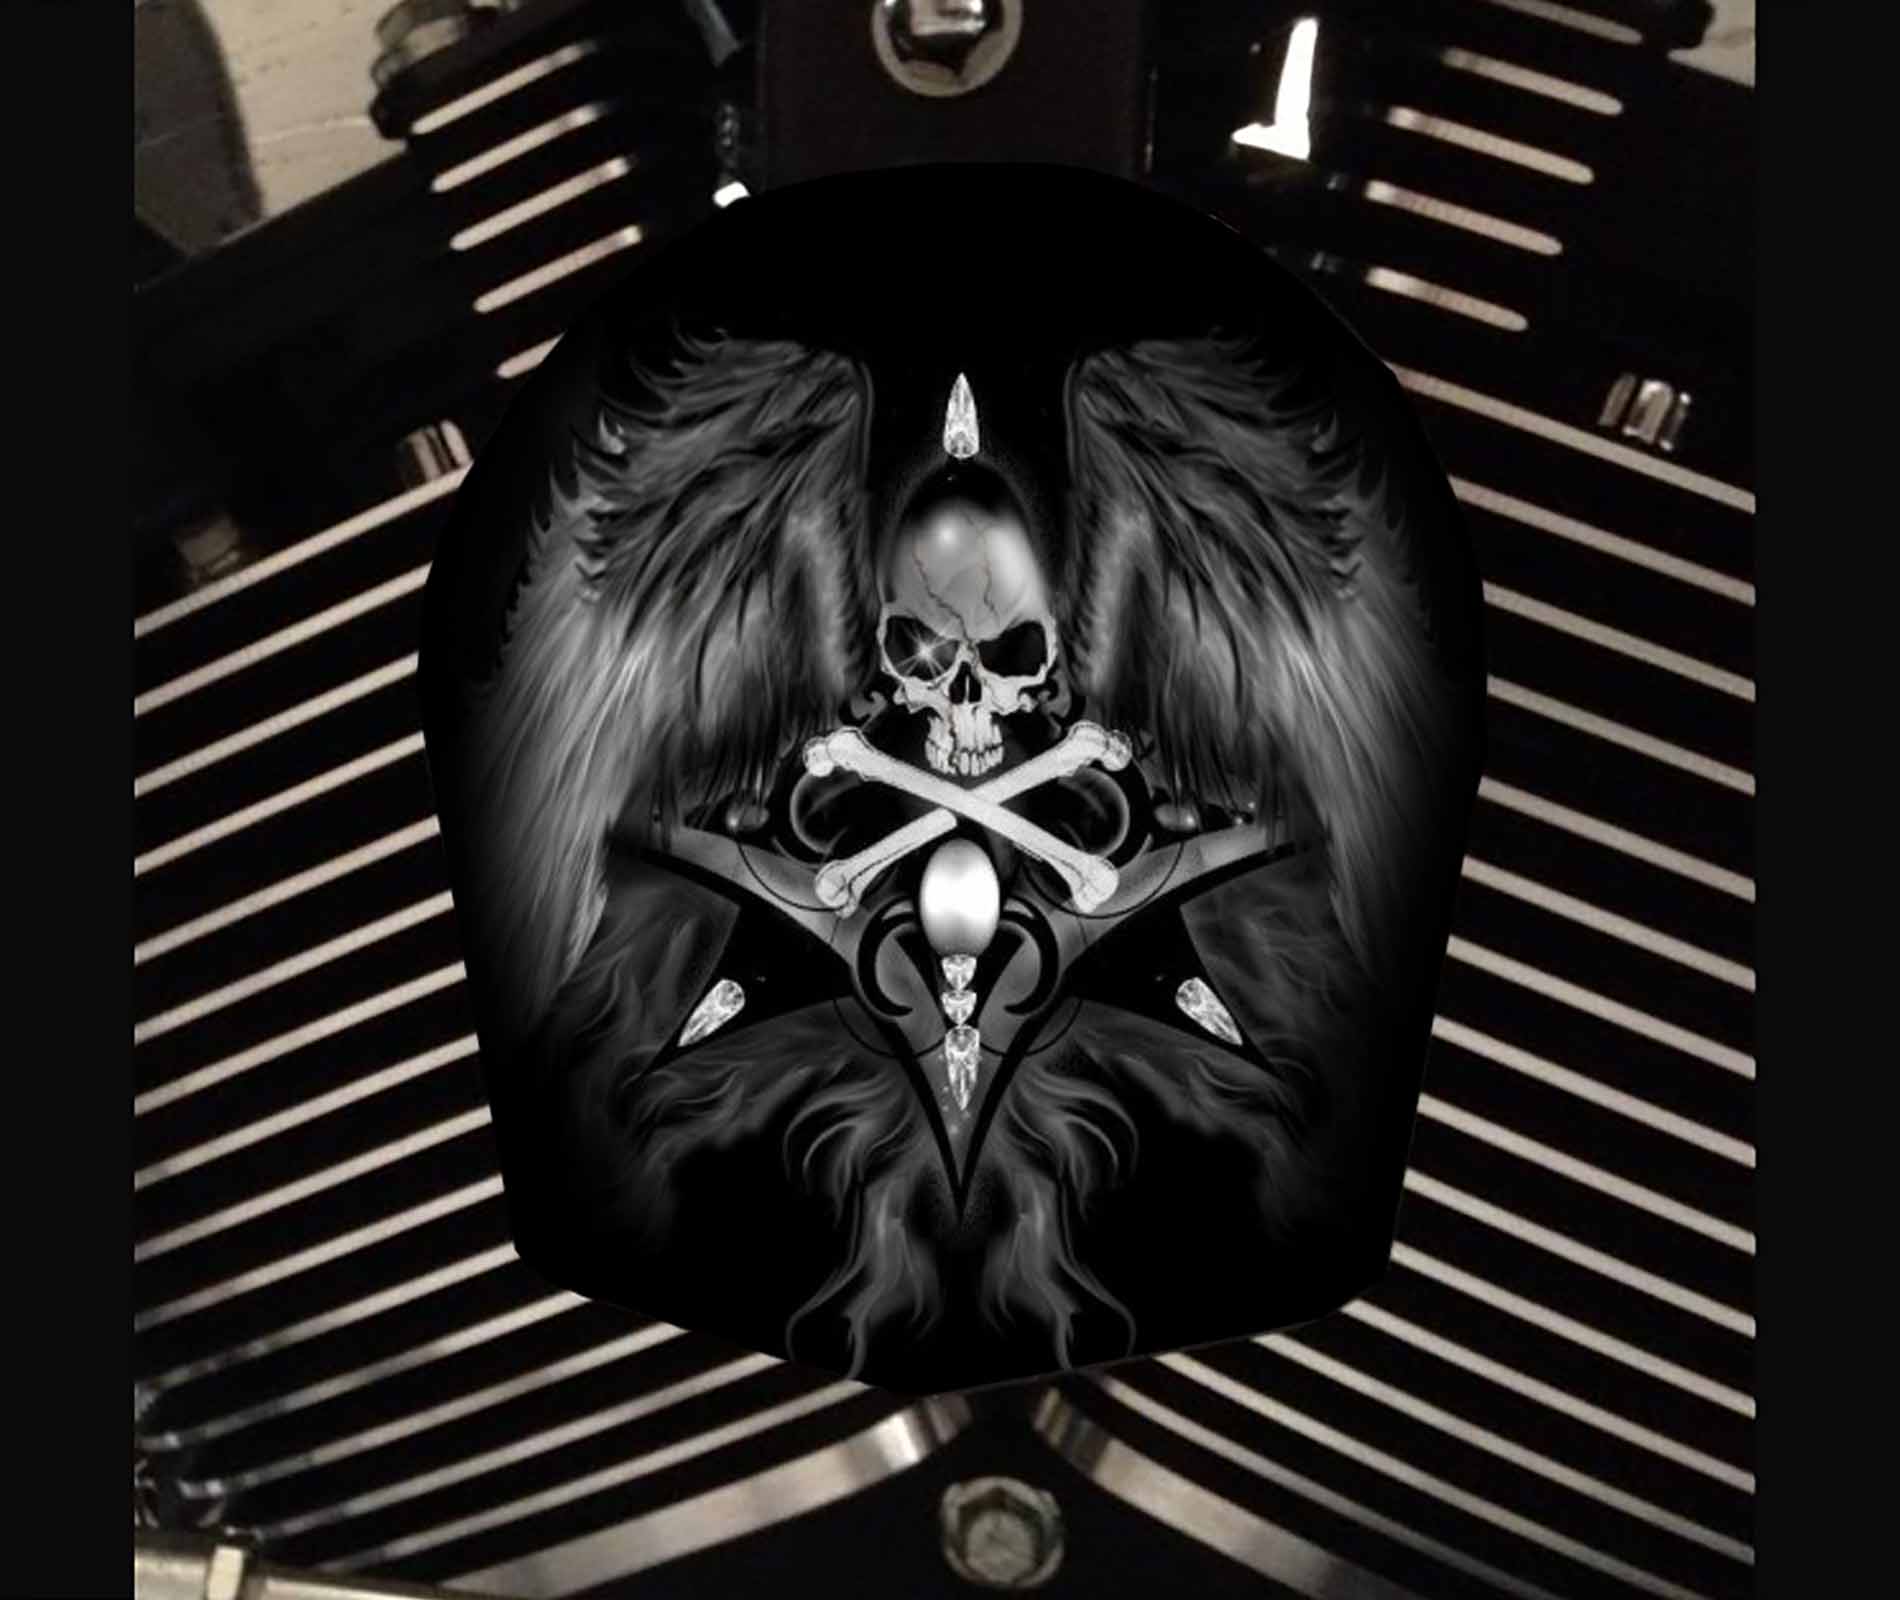 Custom Horn Cover - Skull With Wings